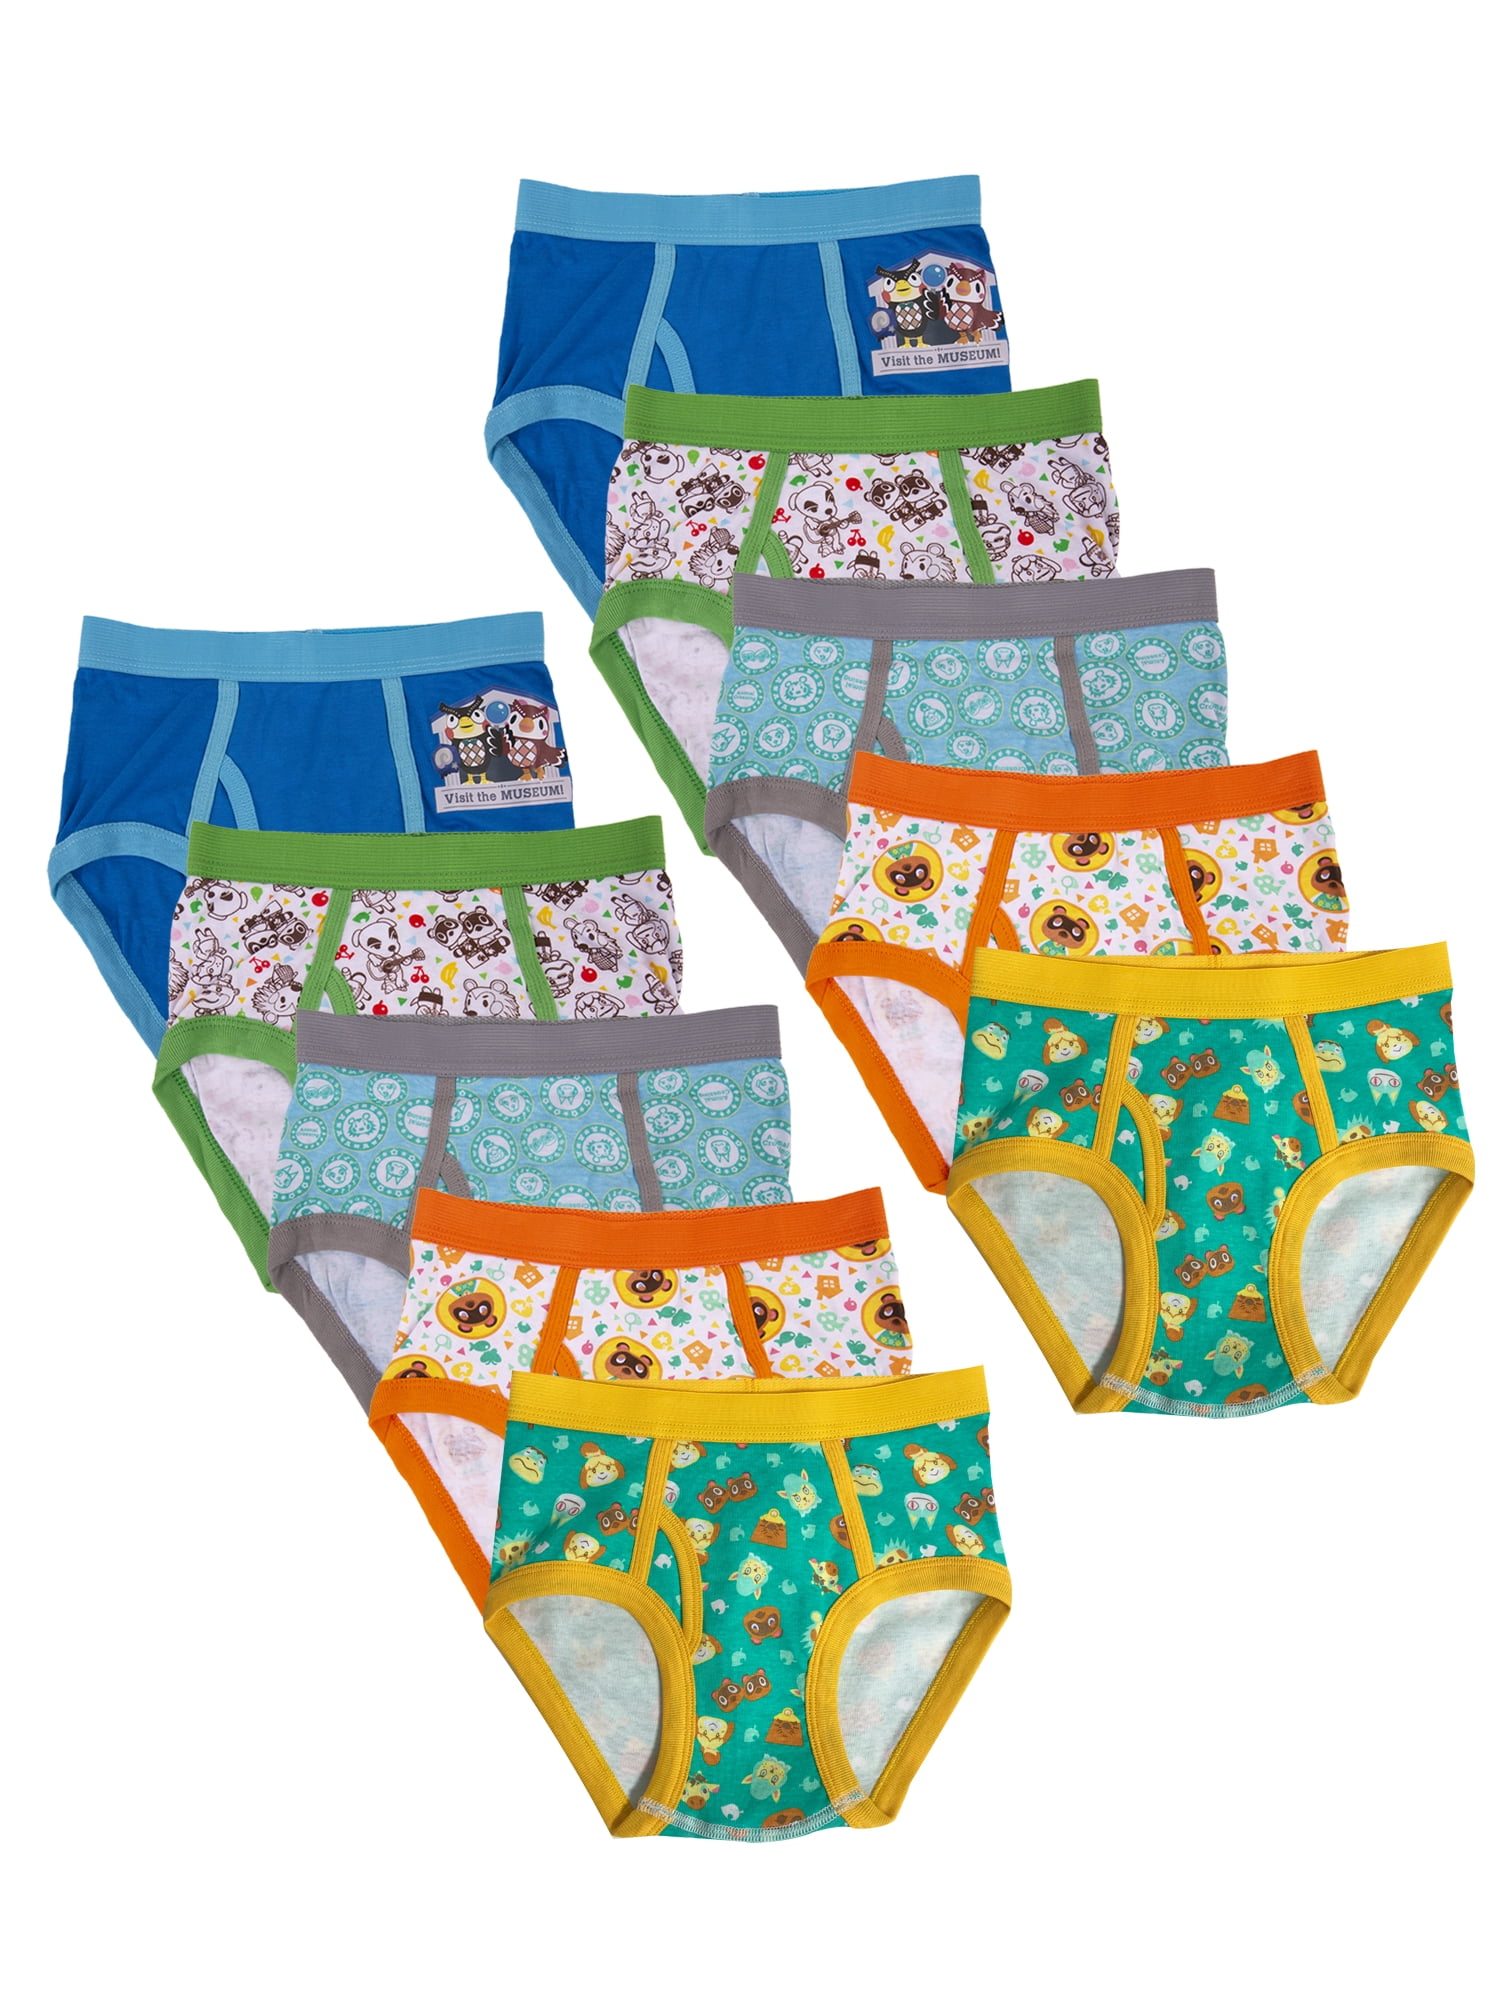 JURASSIC WORLD set of 3 kids cotton briefs underwear Size M-XL 4-7 yrs Free Ship 